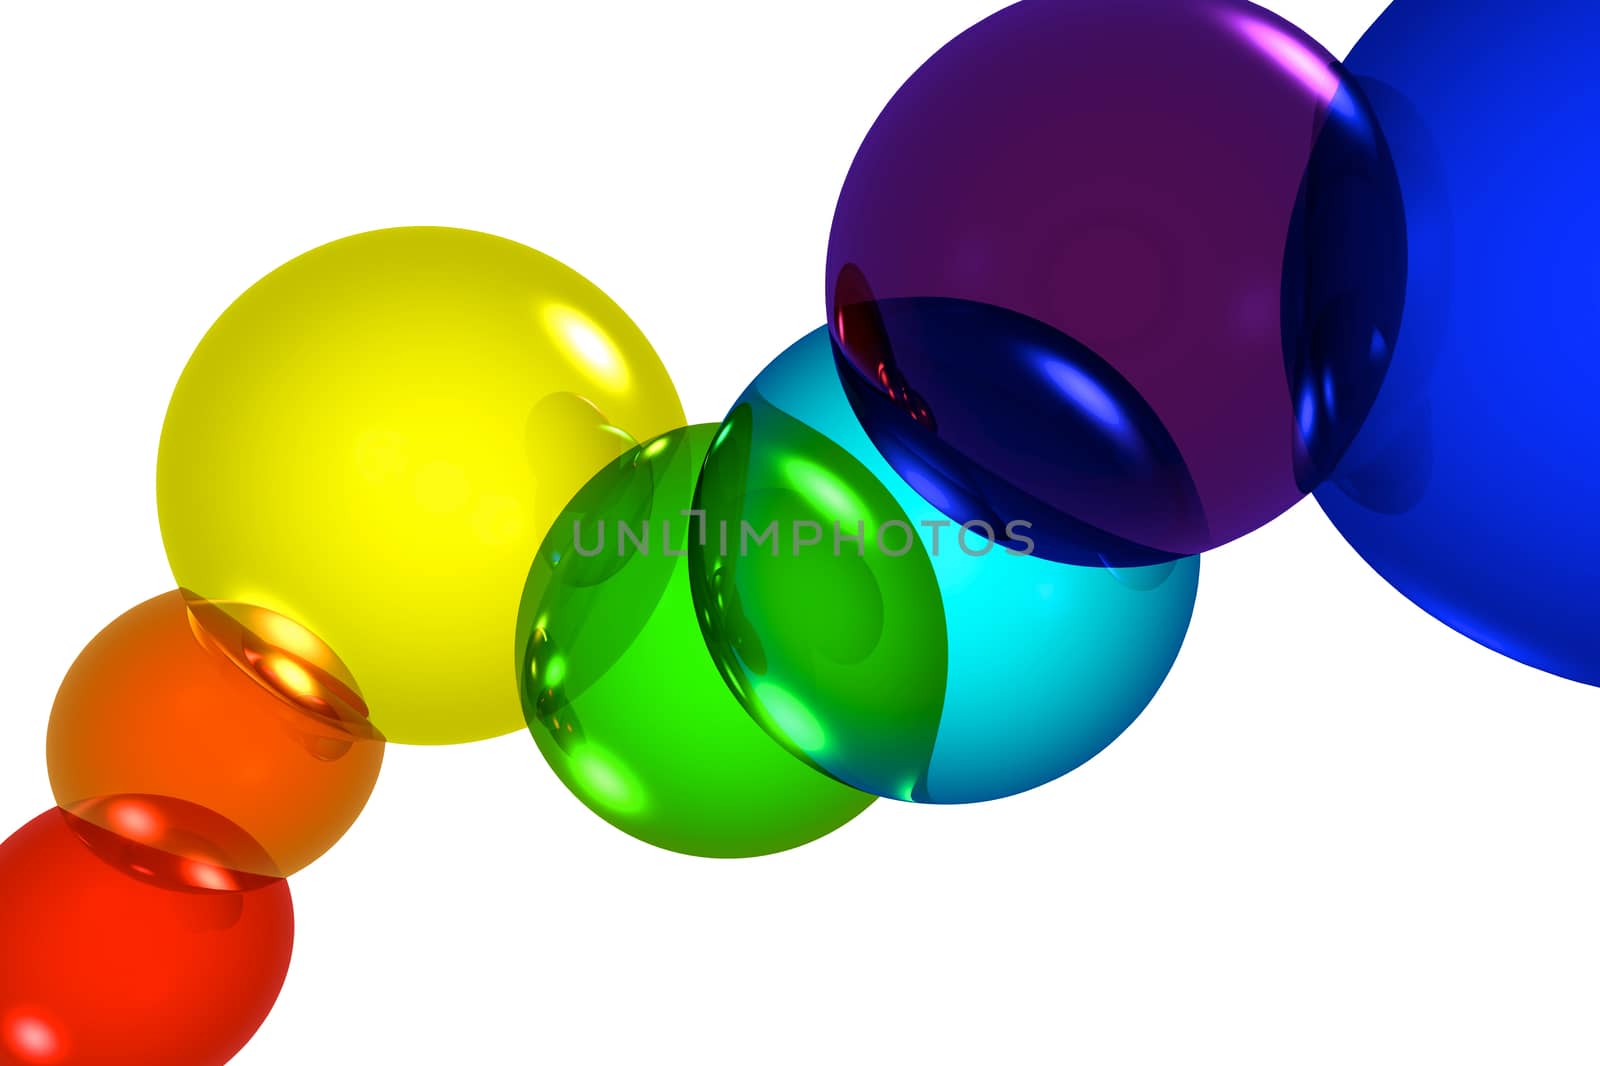 Colored bubbles